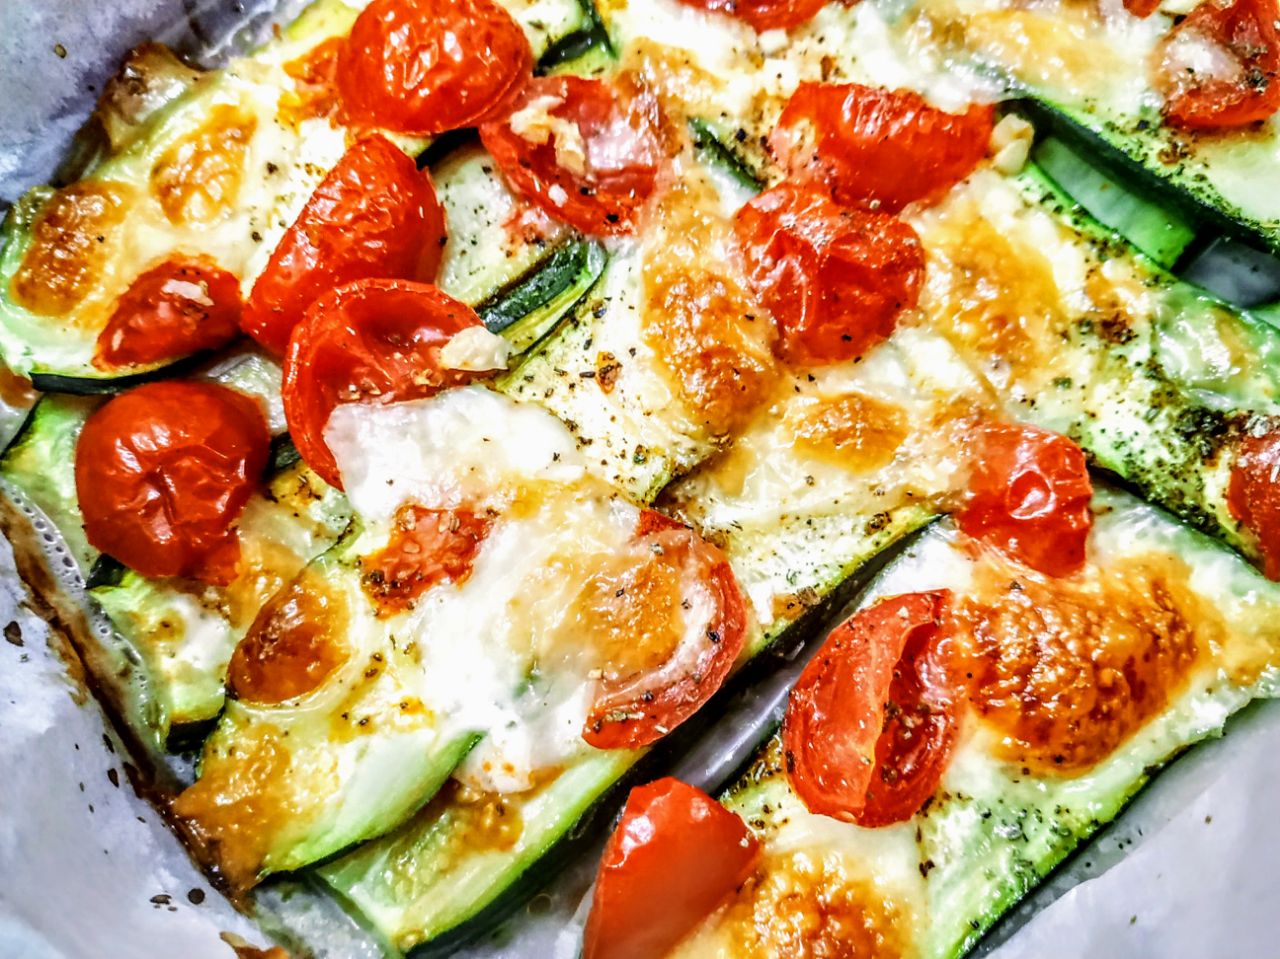 Secondi piatti leggeri senza uova e senza burro: zucchine al forno con pomodori olio evo e mozzarella light!